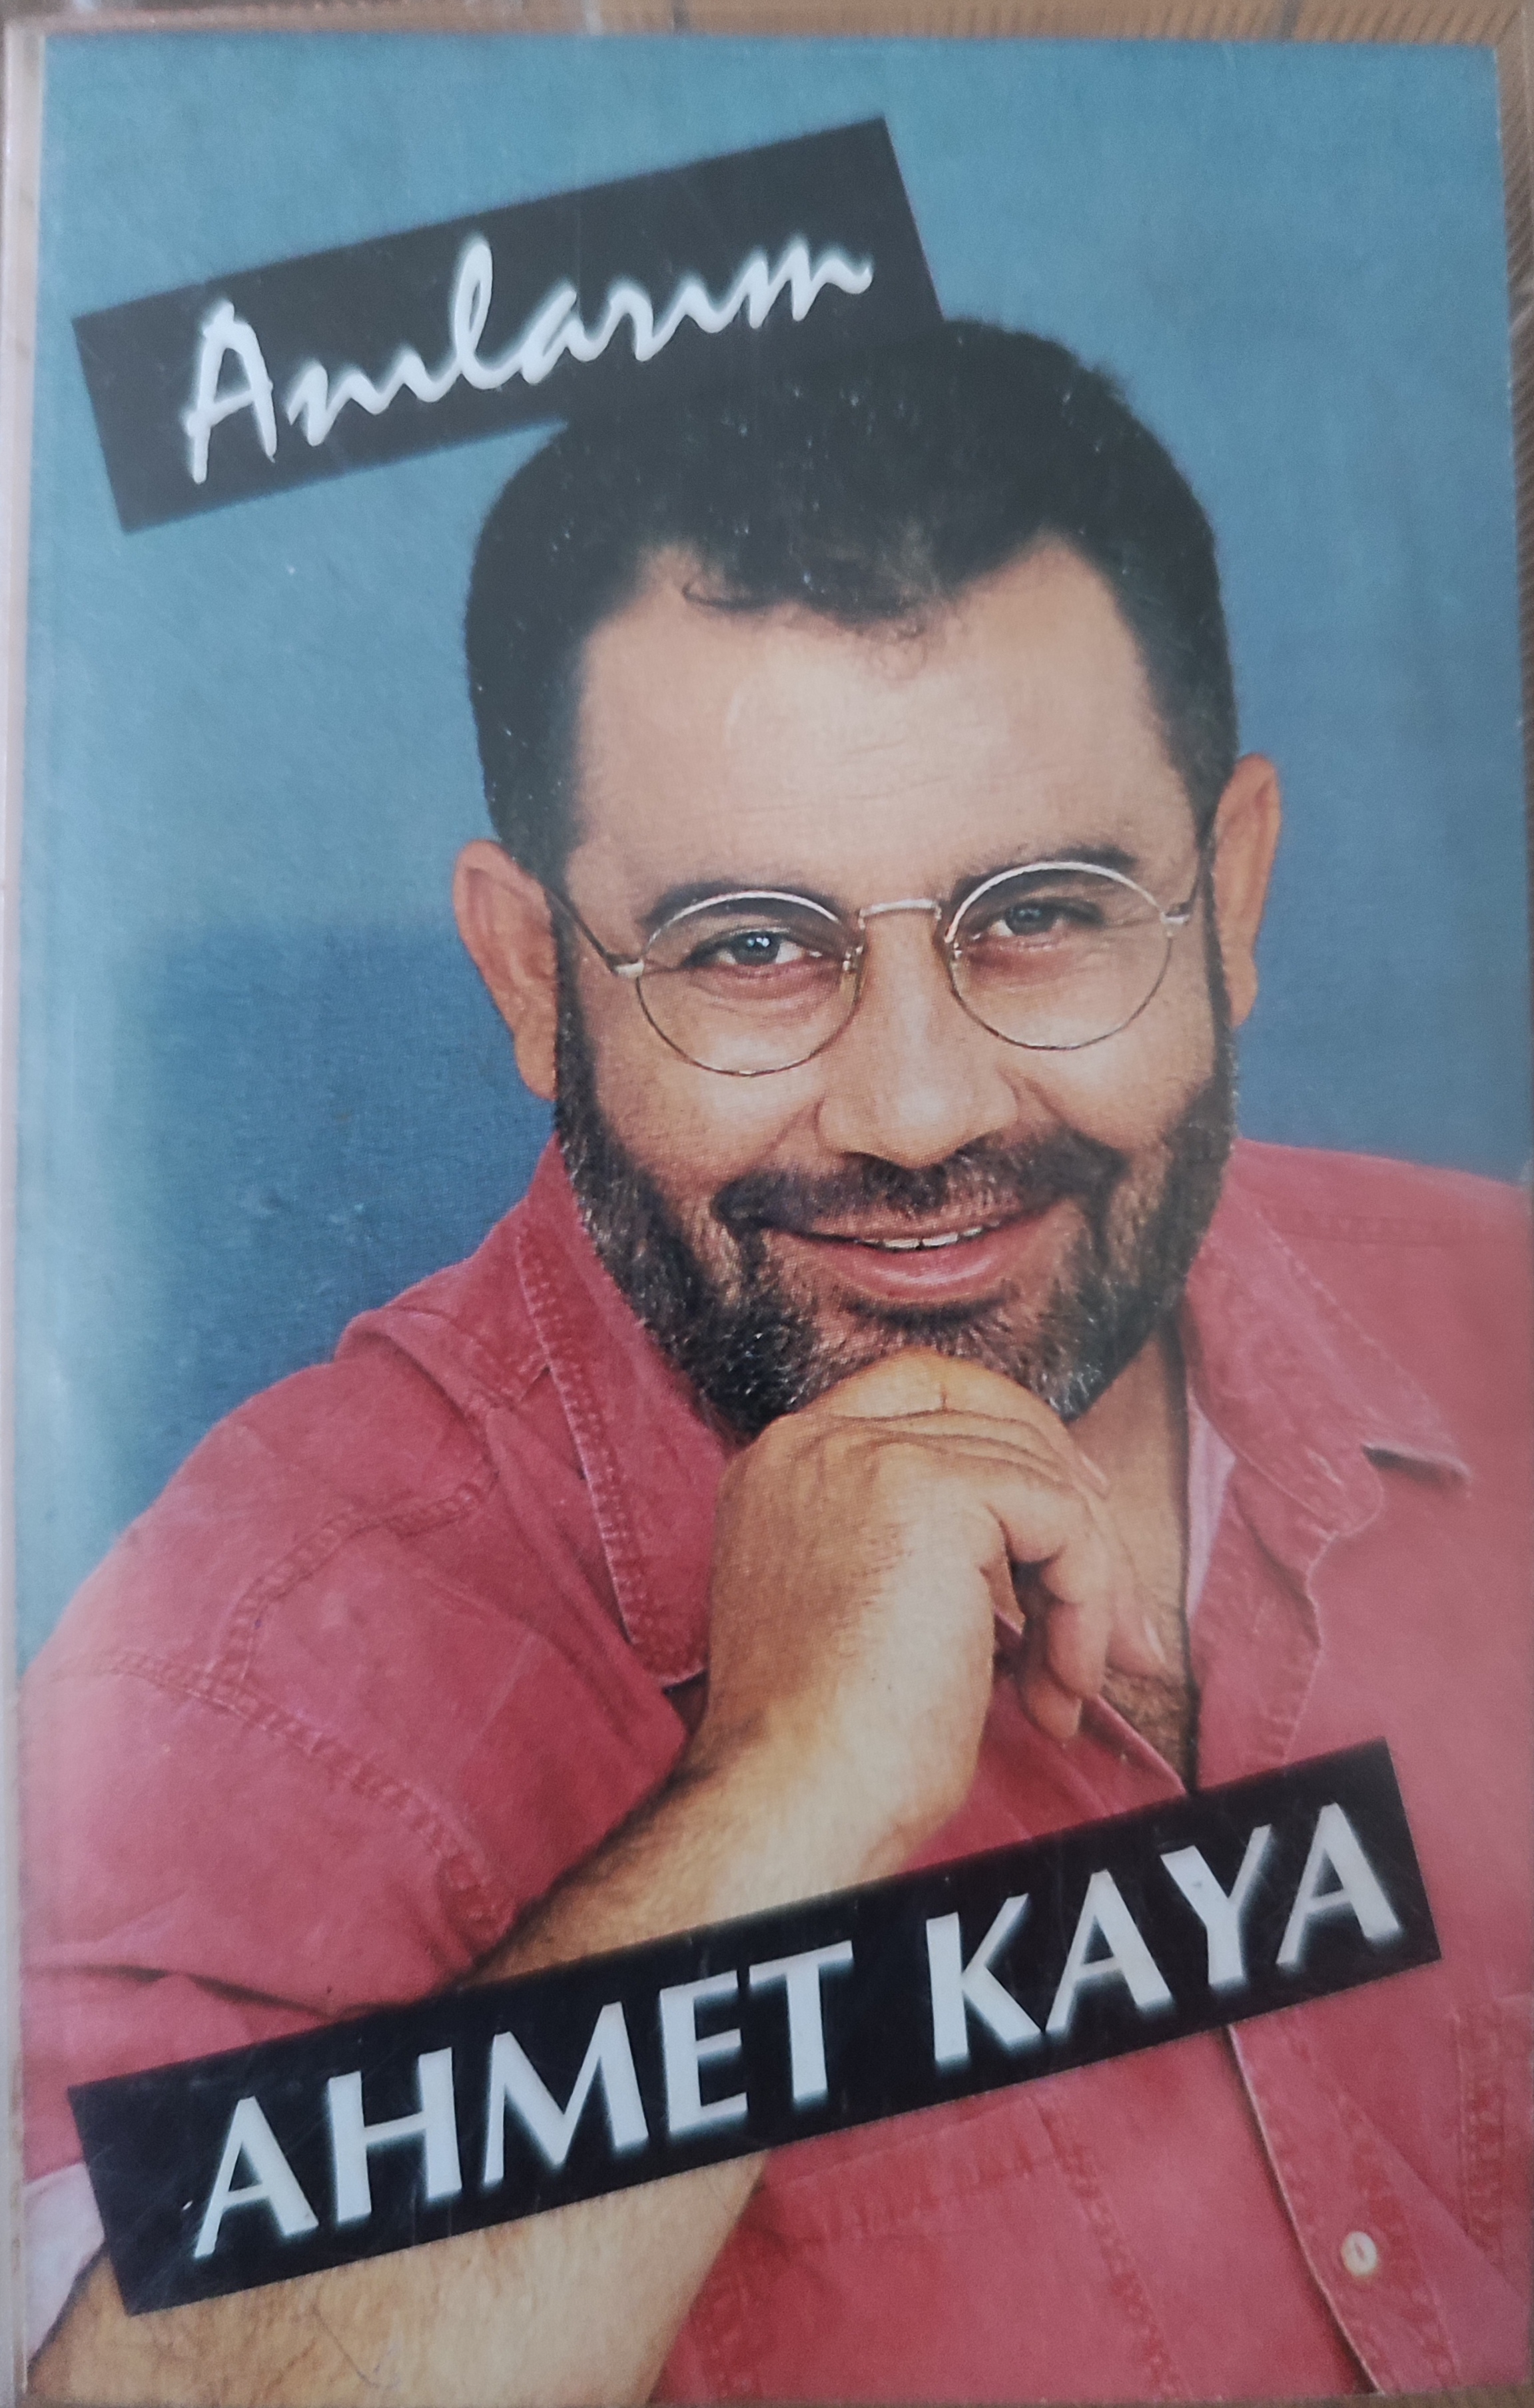 AHMET KAYA - Anılarım - 1995 Türkiye Basım Kaset Albüm 2. el